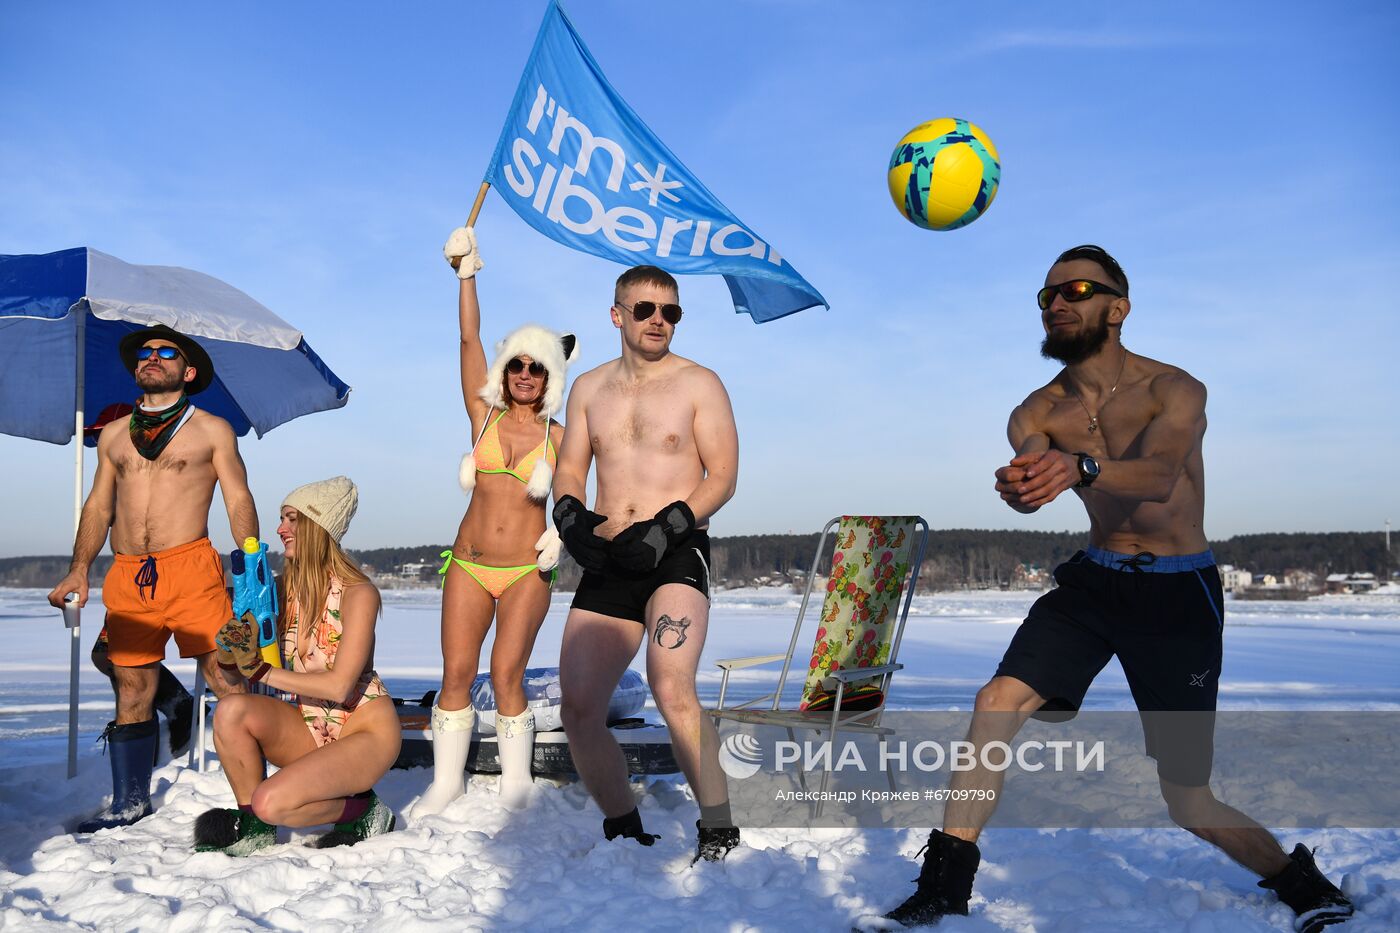 Акция "Белые пляжи Сибири"